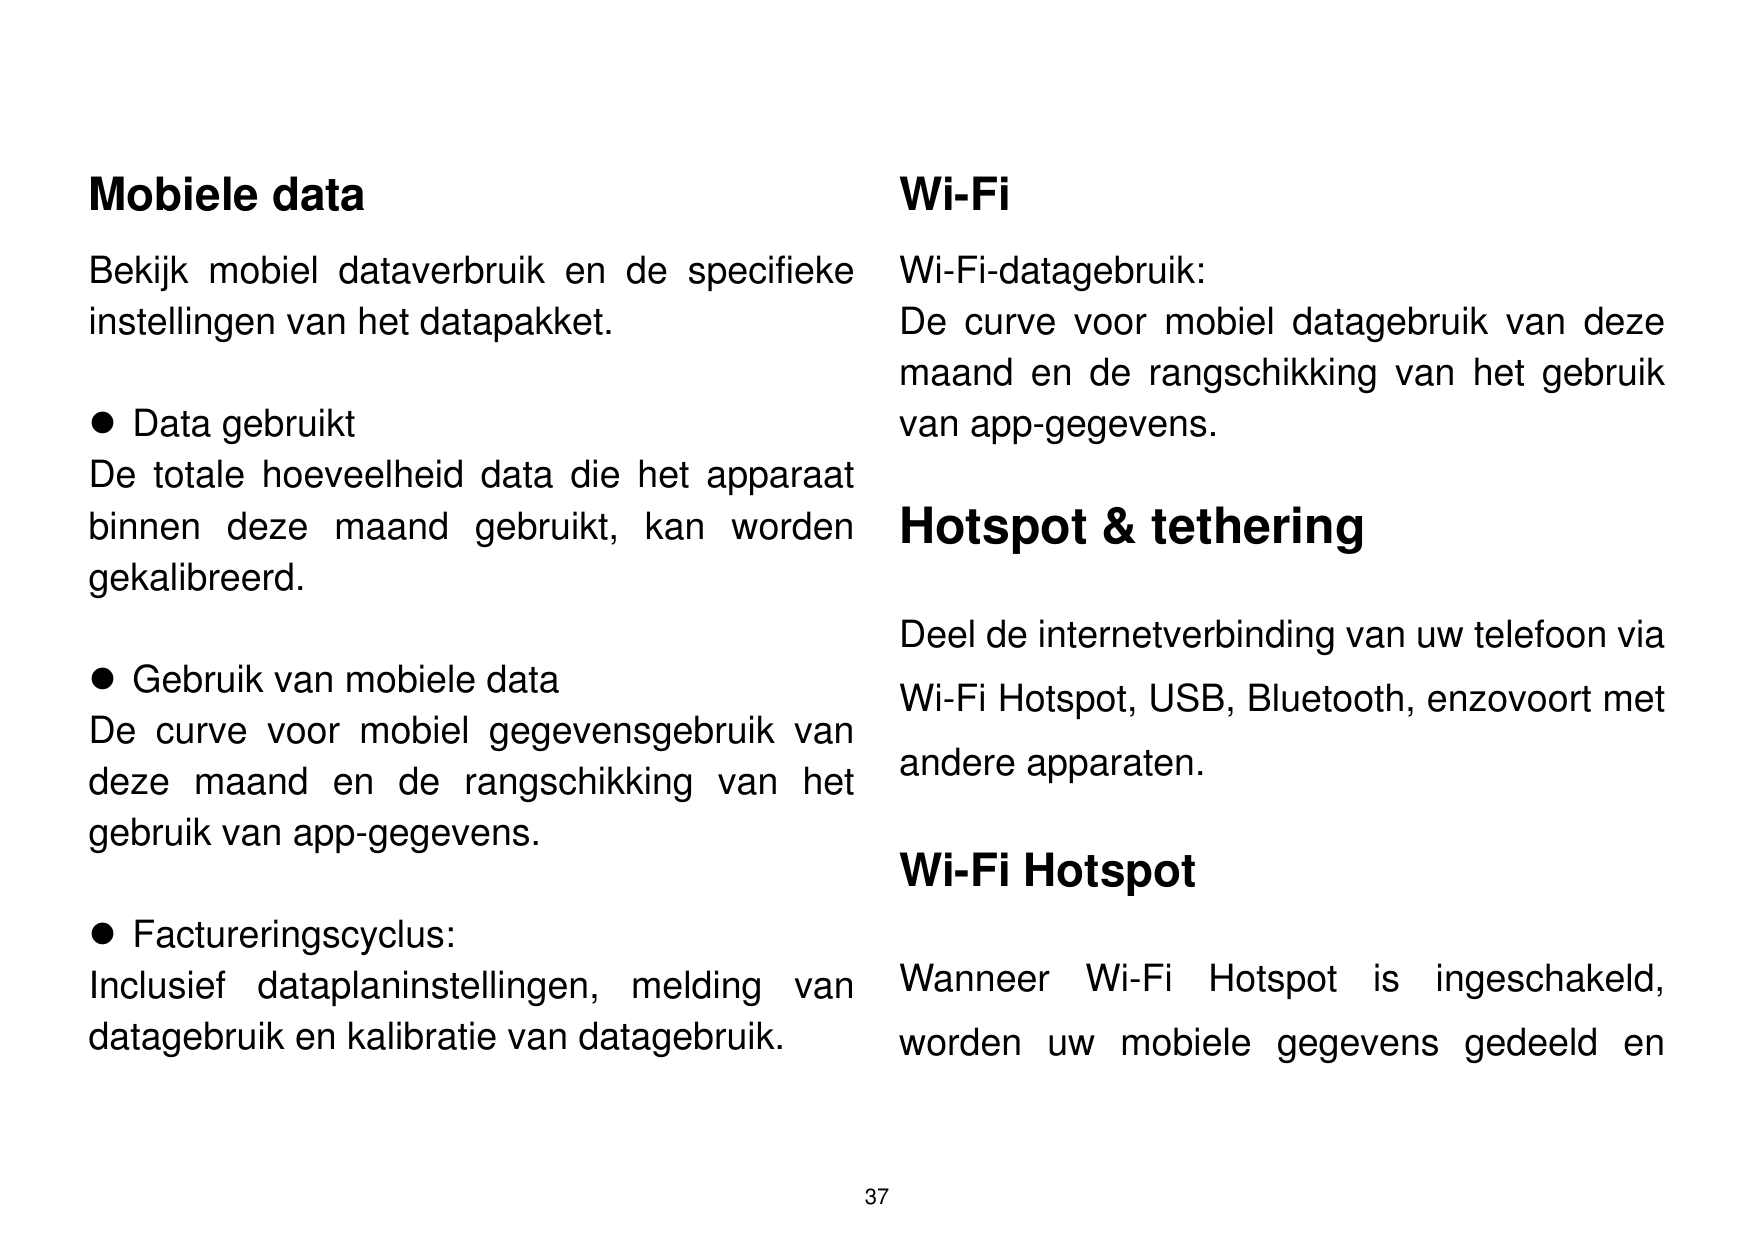 Mobiele dataWi-FiBekijk mobiel dataverbruik en de specifiekeinstellingen van het datapakket.Wi-Fi-datagebruik:De curve voor mobi